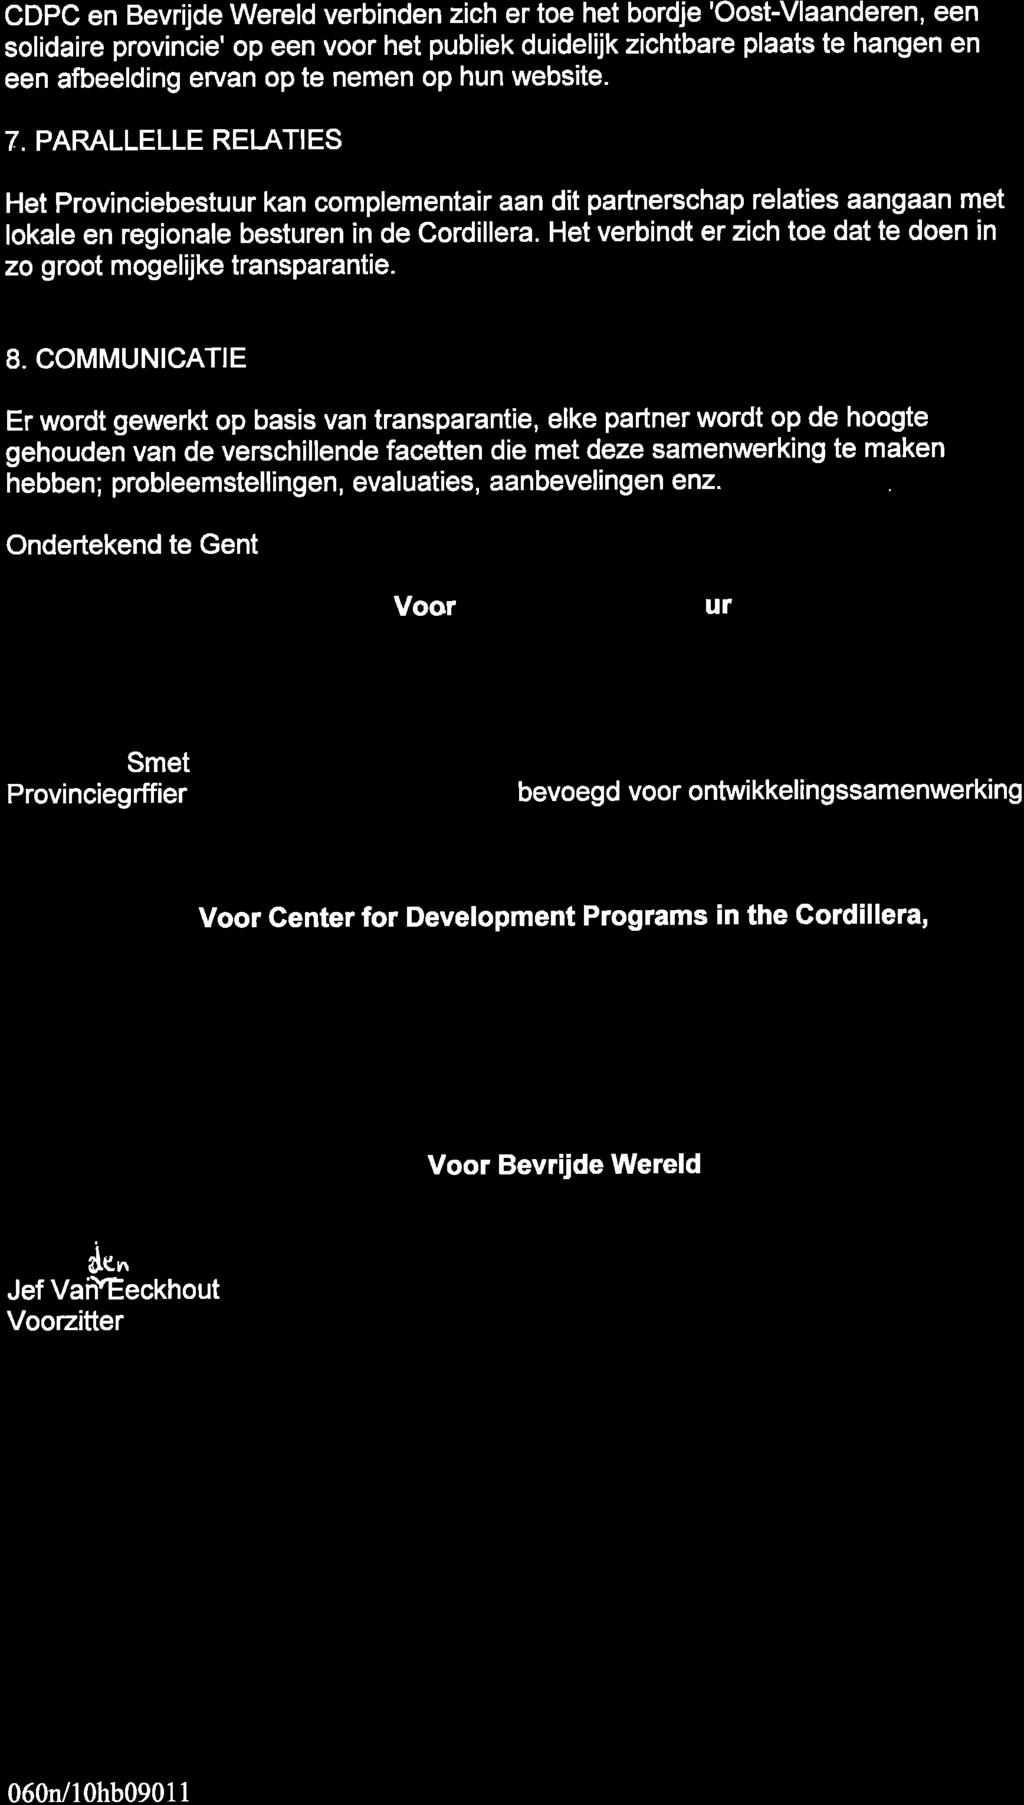 CDPC en Bevrijde Wereld verbinden zich er toe het bordje 'Oost-Vlaanderen, een solidaire provincie' op een voor het publiek duidel'tjk zichtbare plaats te hangen en een afbeelding ervan op te nemen